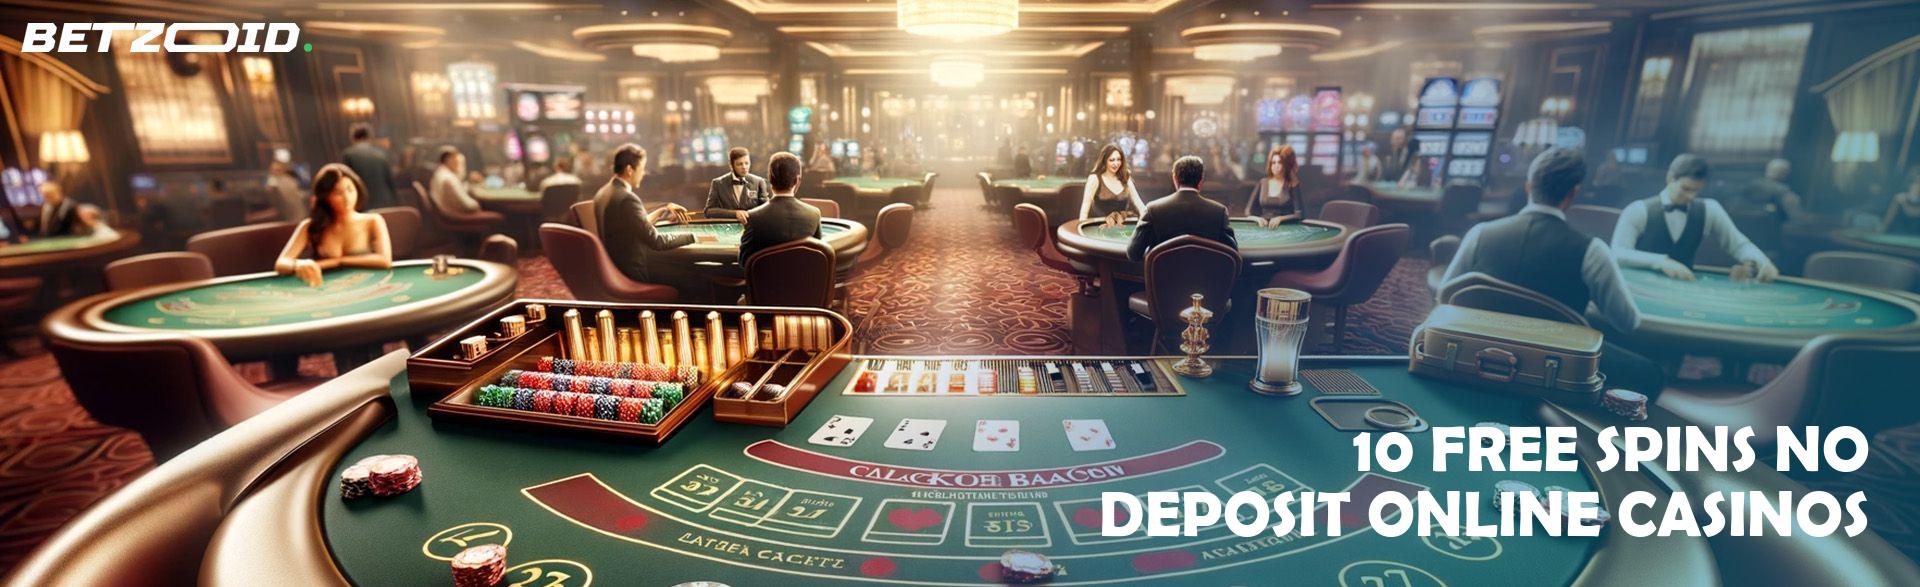 10 Free Spins No Deposit Online Casinos.